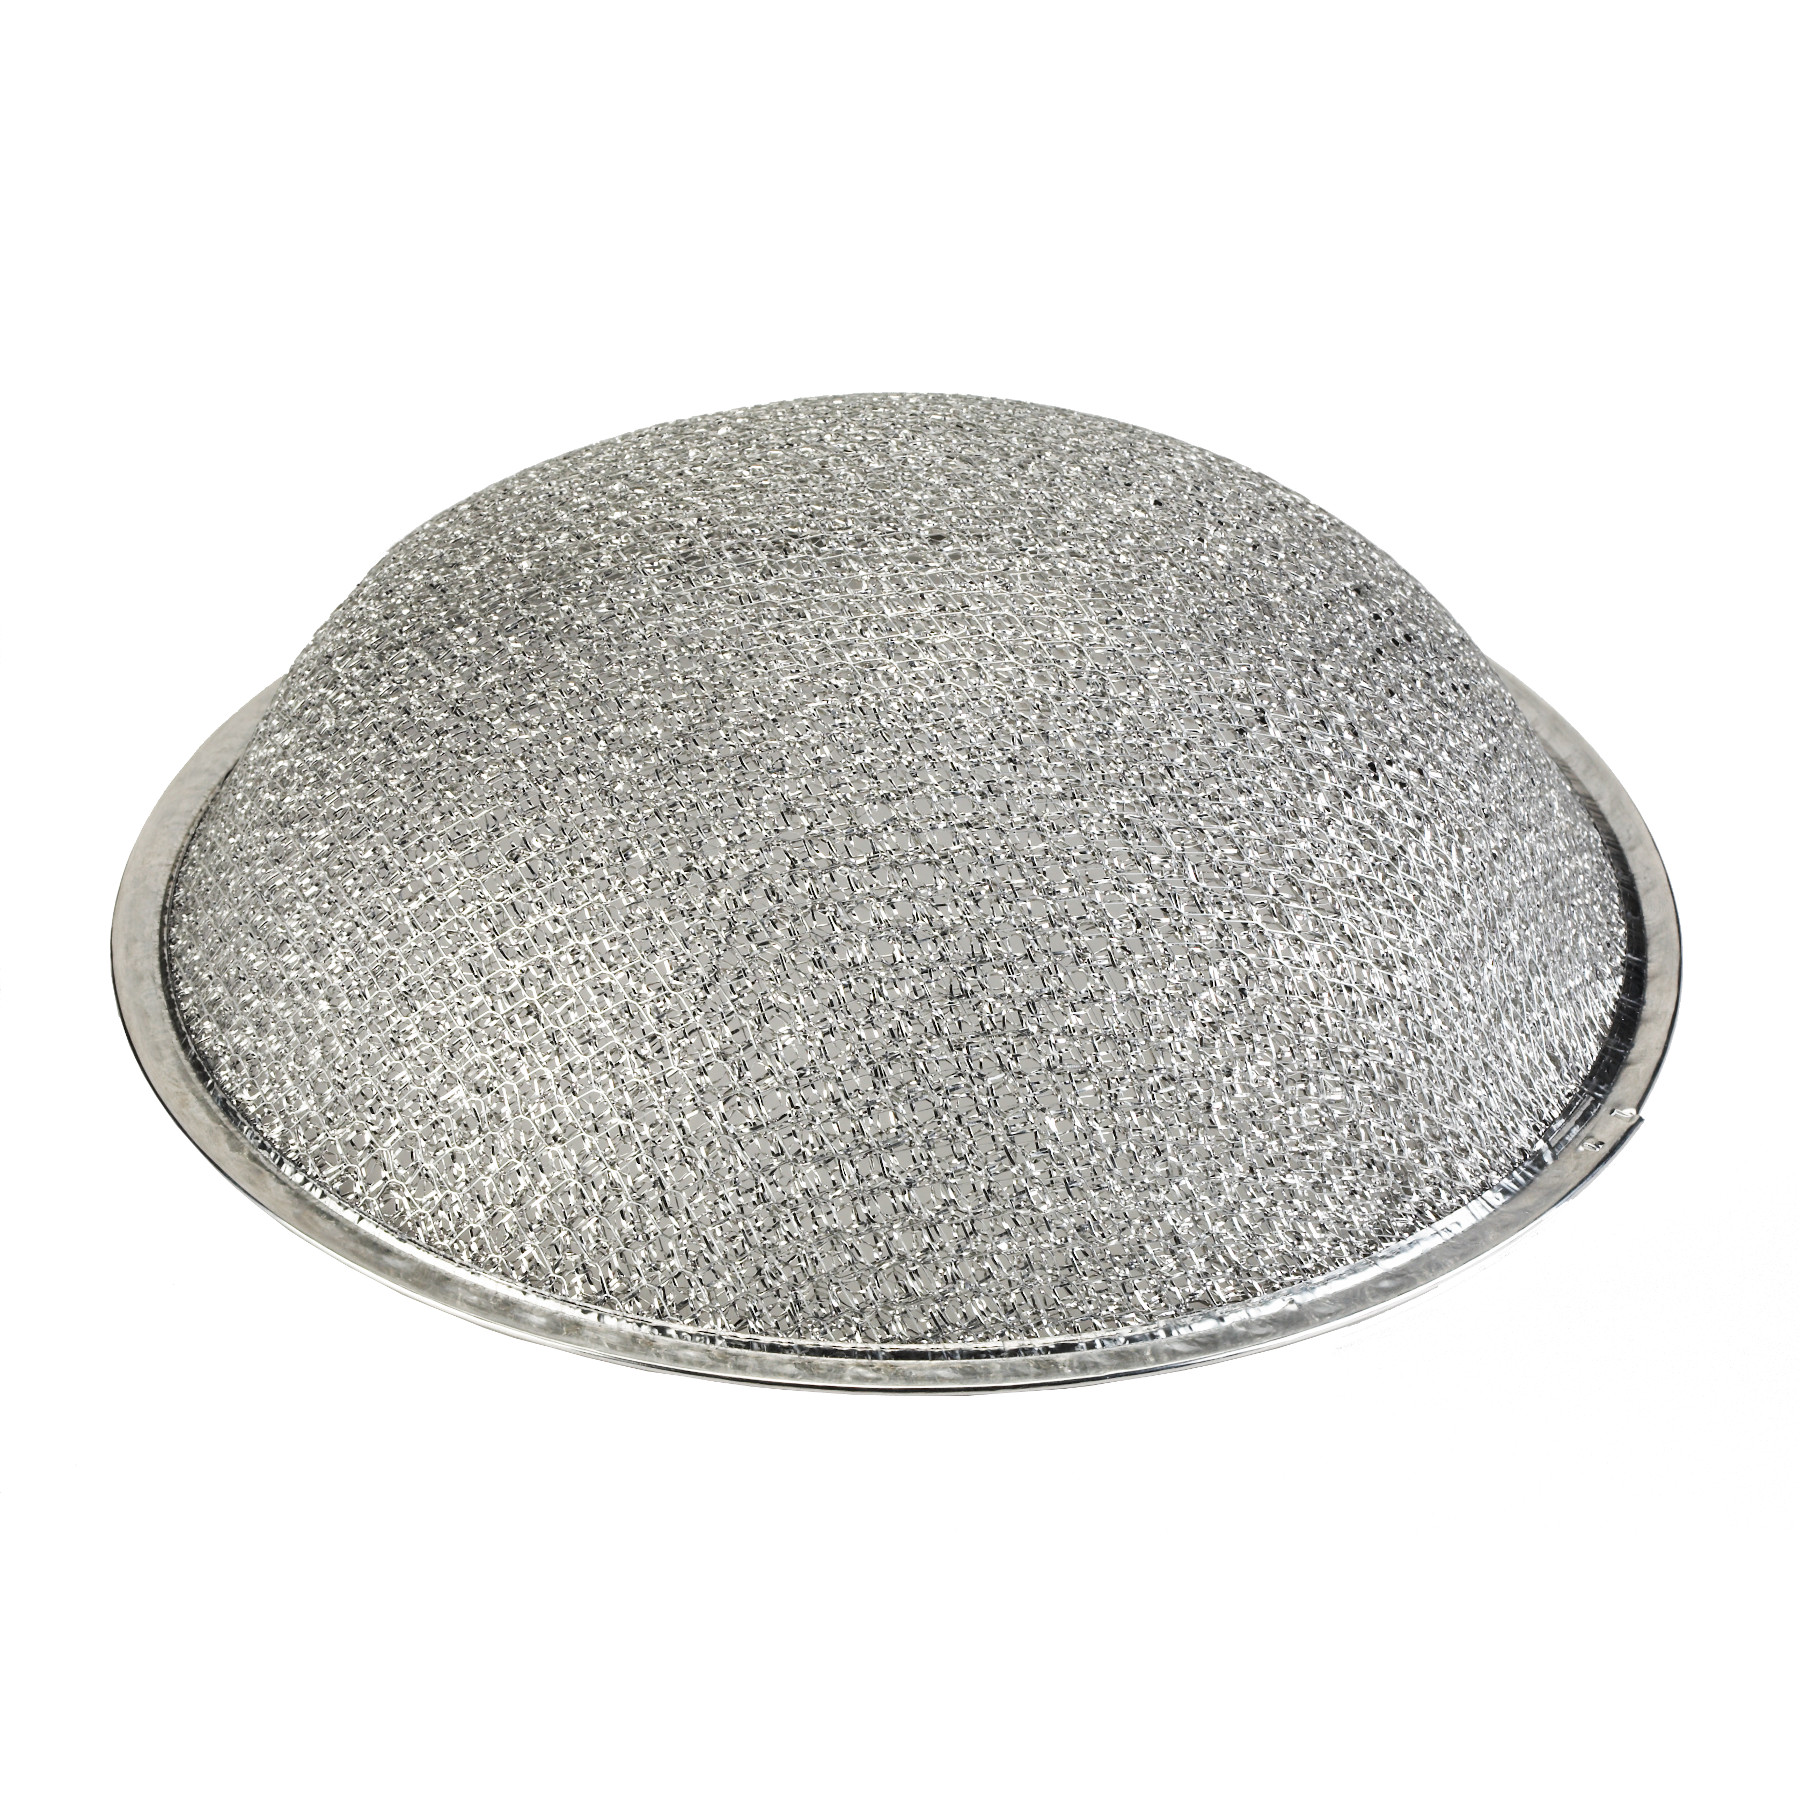 圆形铝润滑脂过滤器，10-1/2英寸x 3/32英寸厚度，3-1/4英寸圆顶